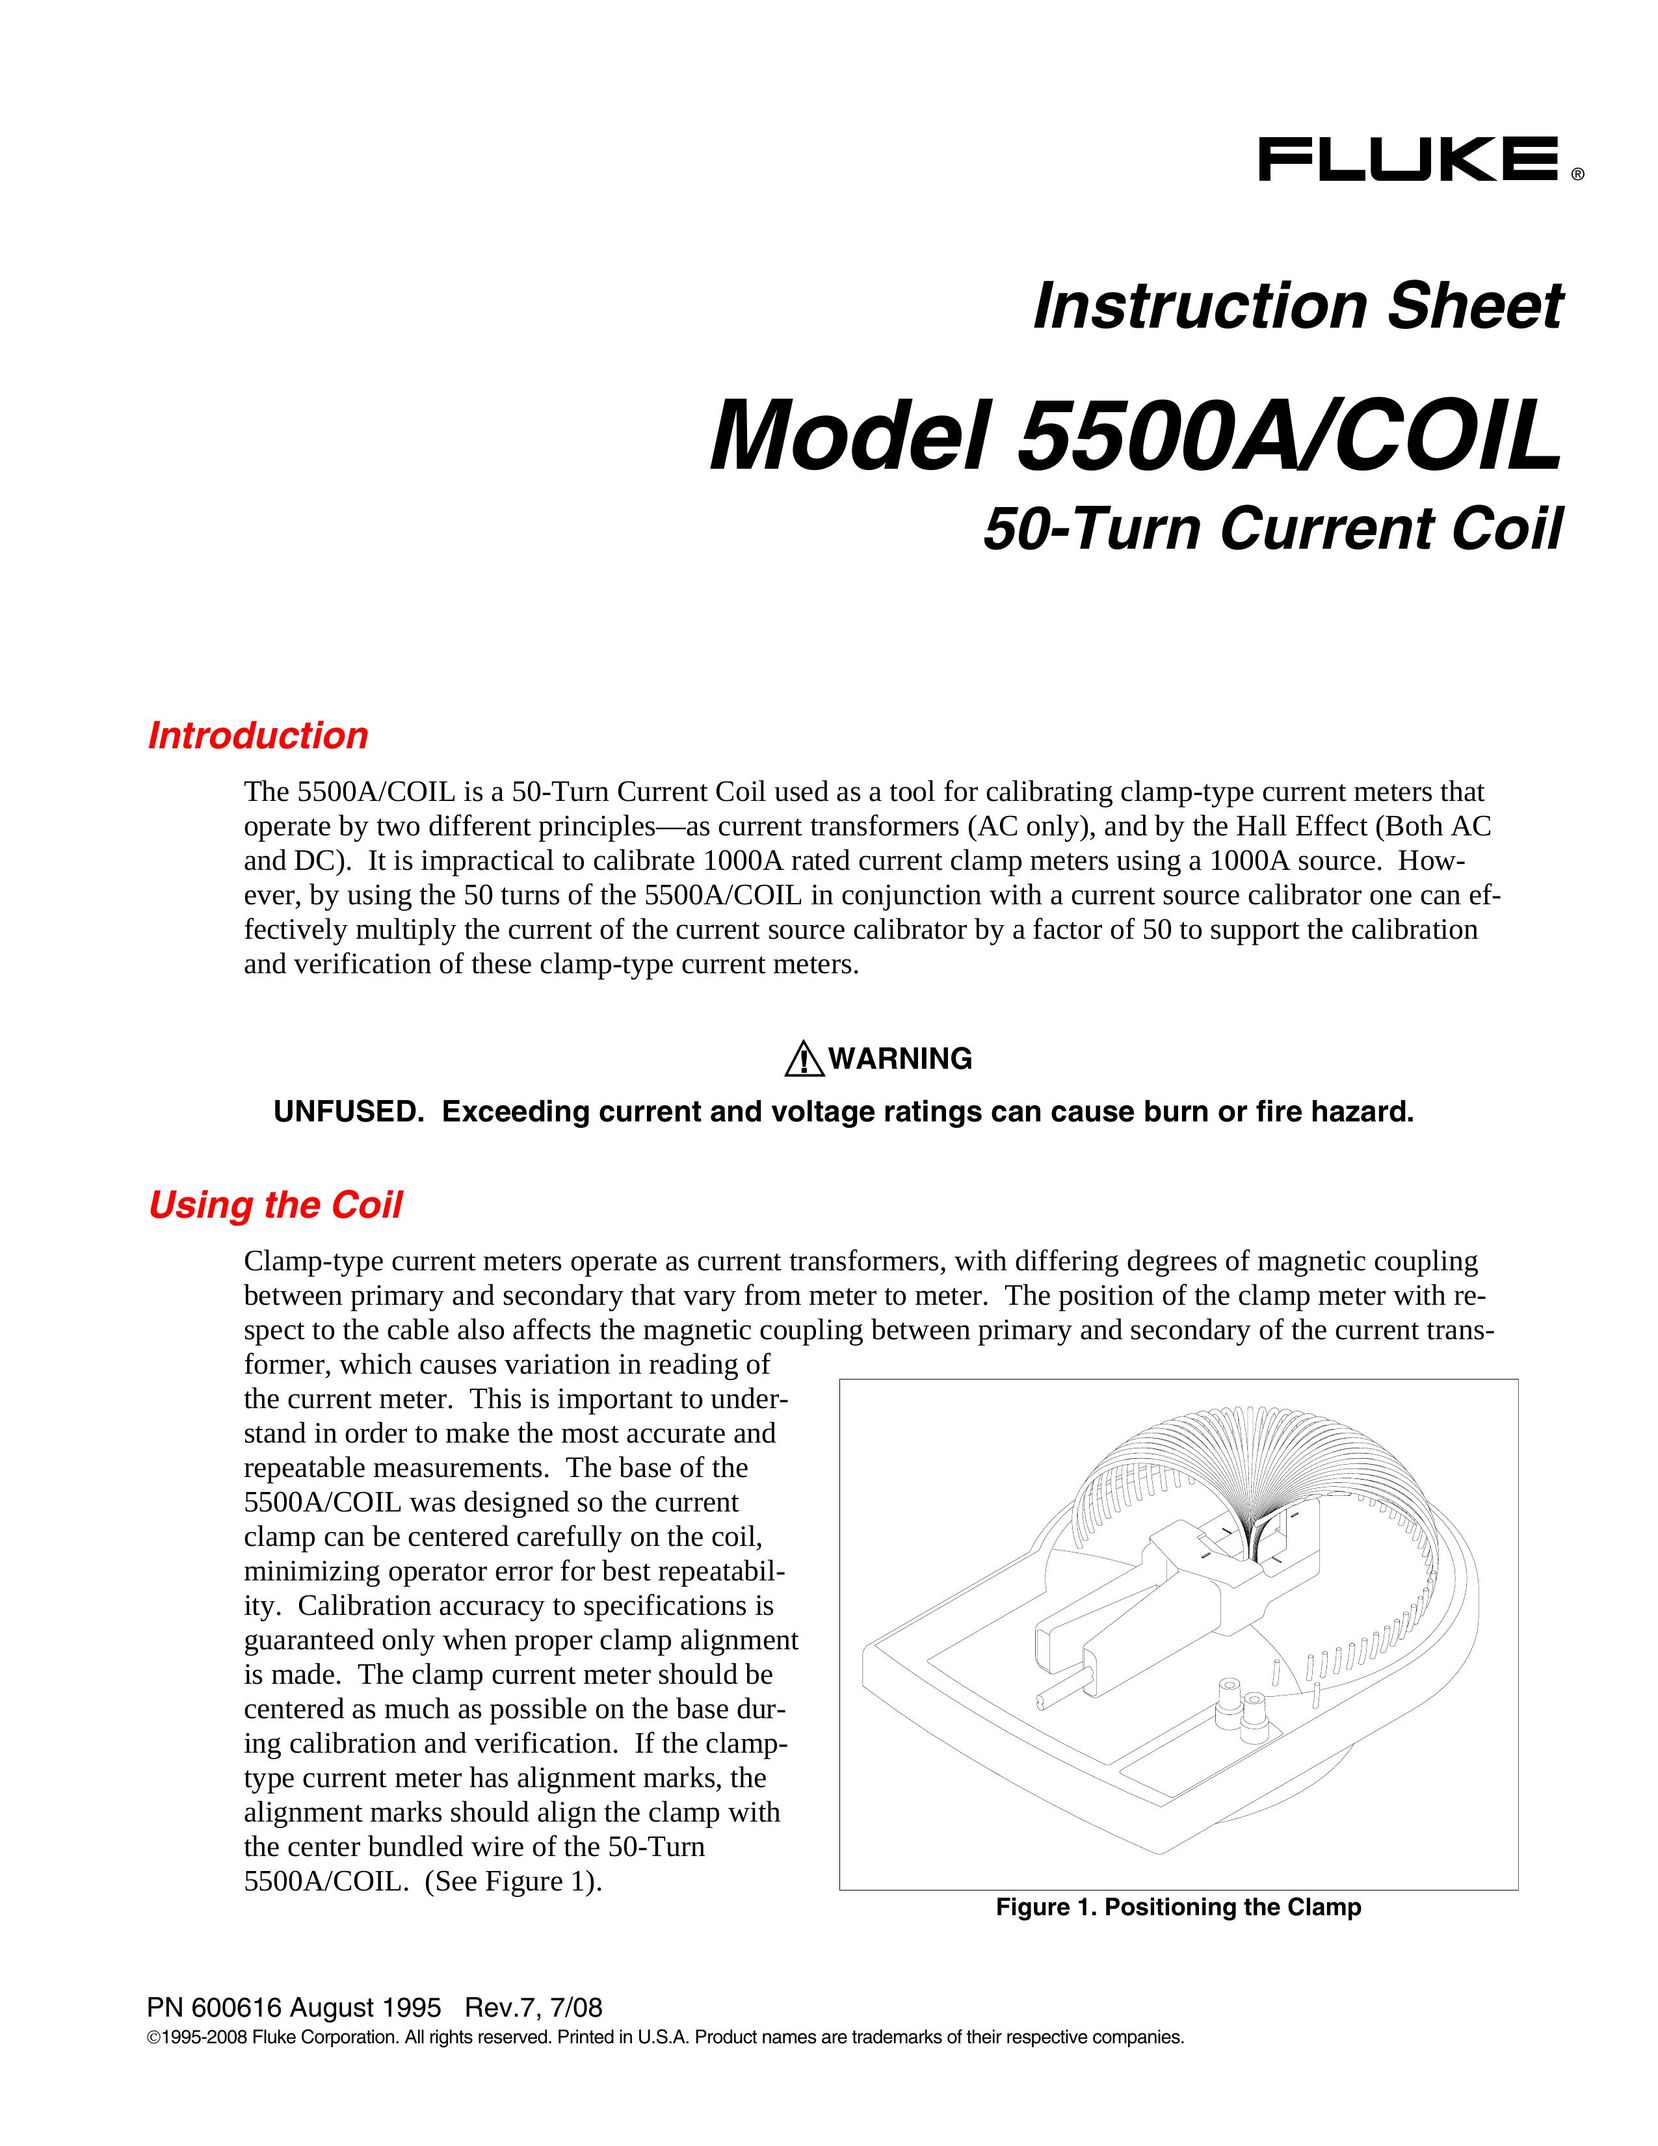 Fluke 5500A/COIL Calculator User Manual